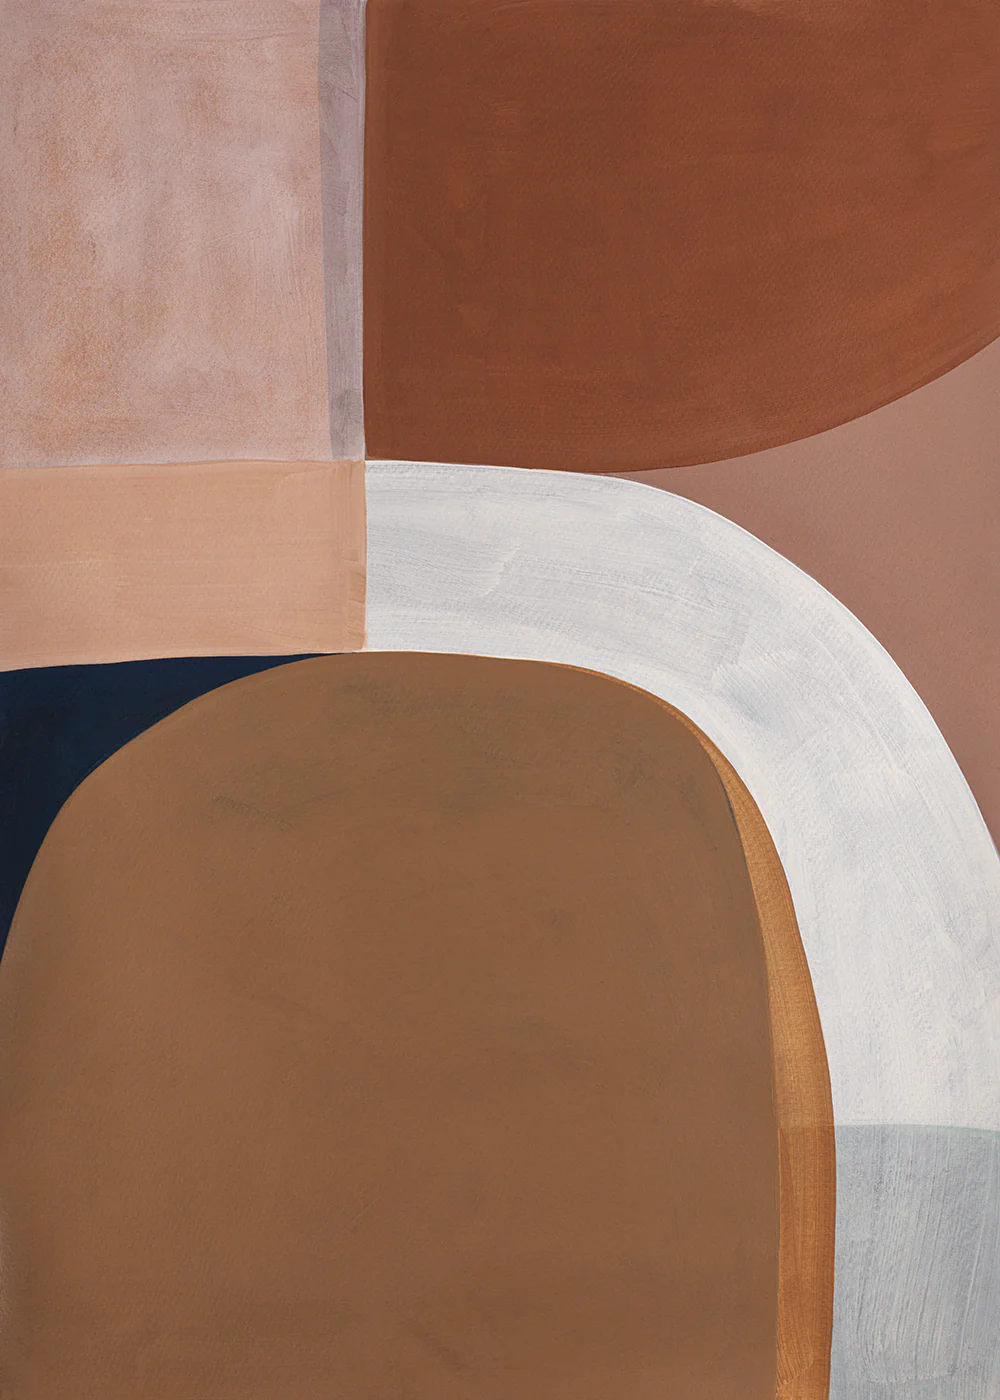 Painted Shapes 01  in Braun / Beige / Orange präsentiert im Onlineshop von KAQTU Design AG. Bild ist von Paper Collective